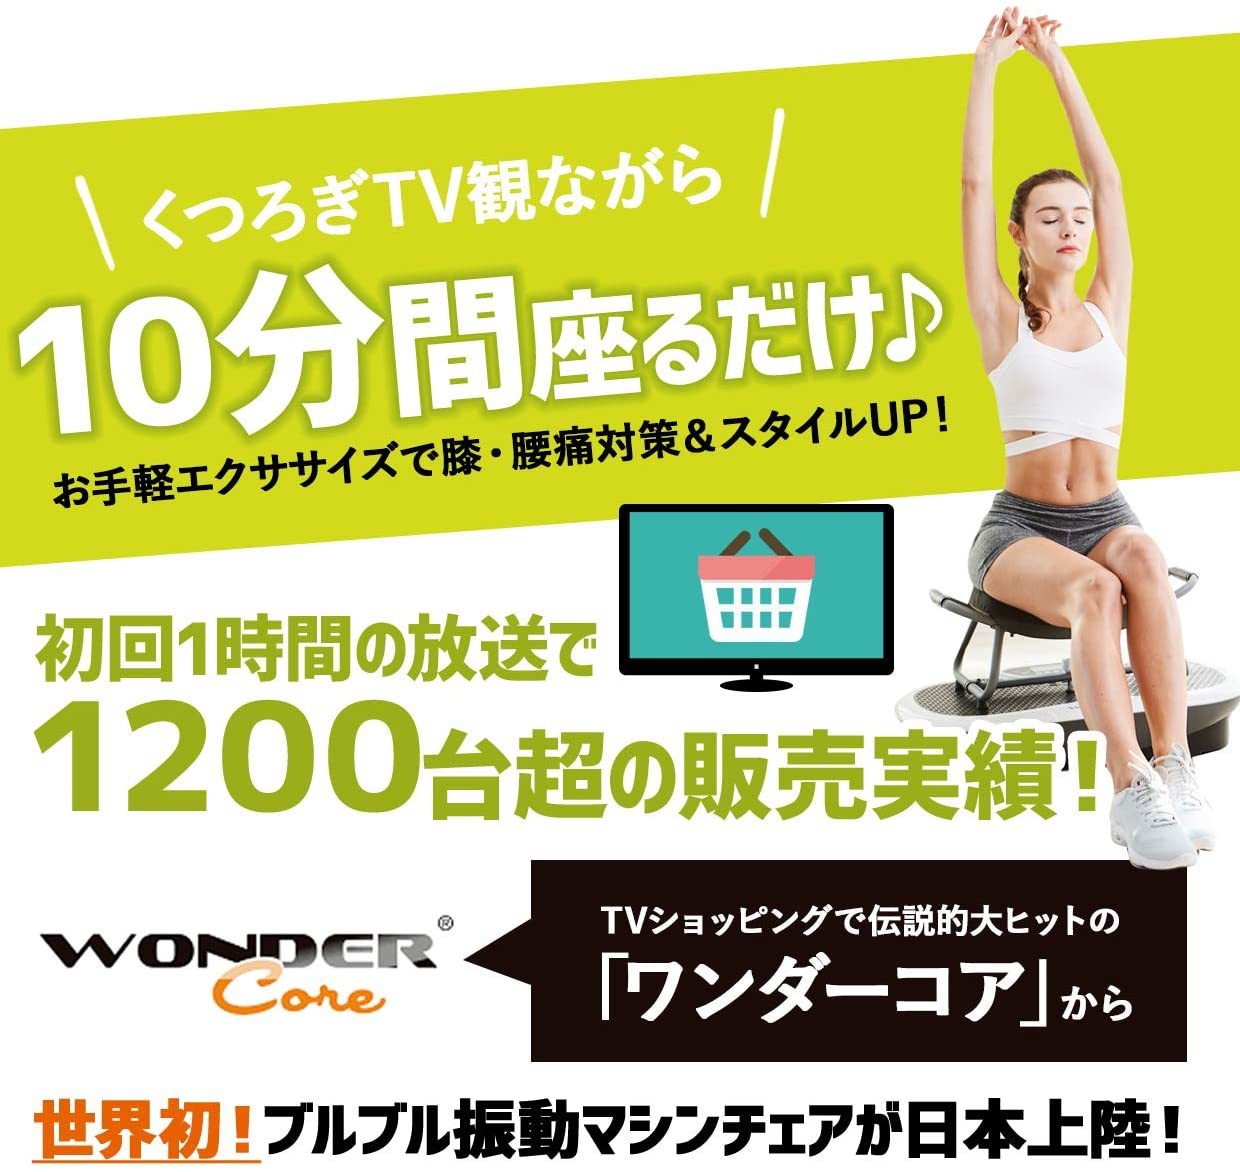 Wonder Core(ワンダーコア) ロックンフィット WRKF-Rの商品画像3 